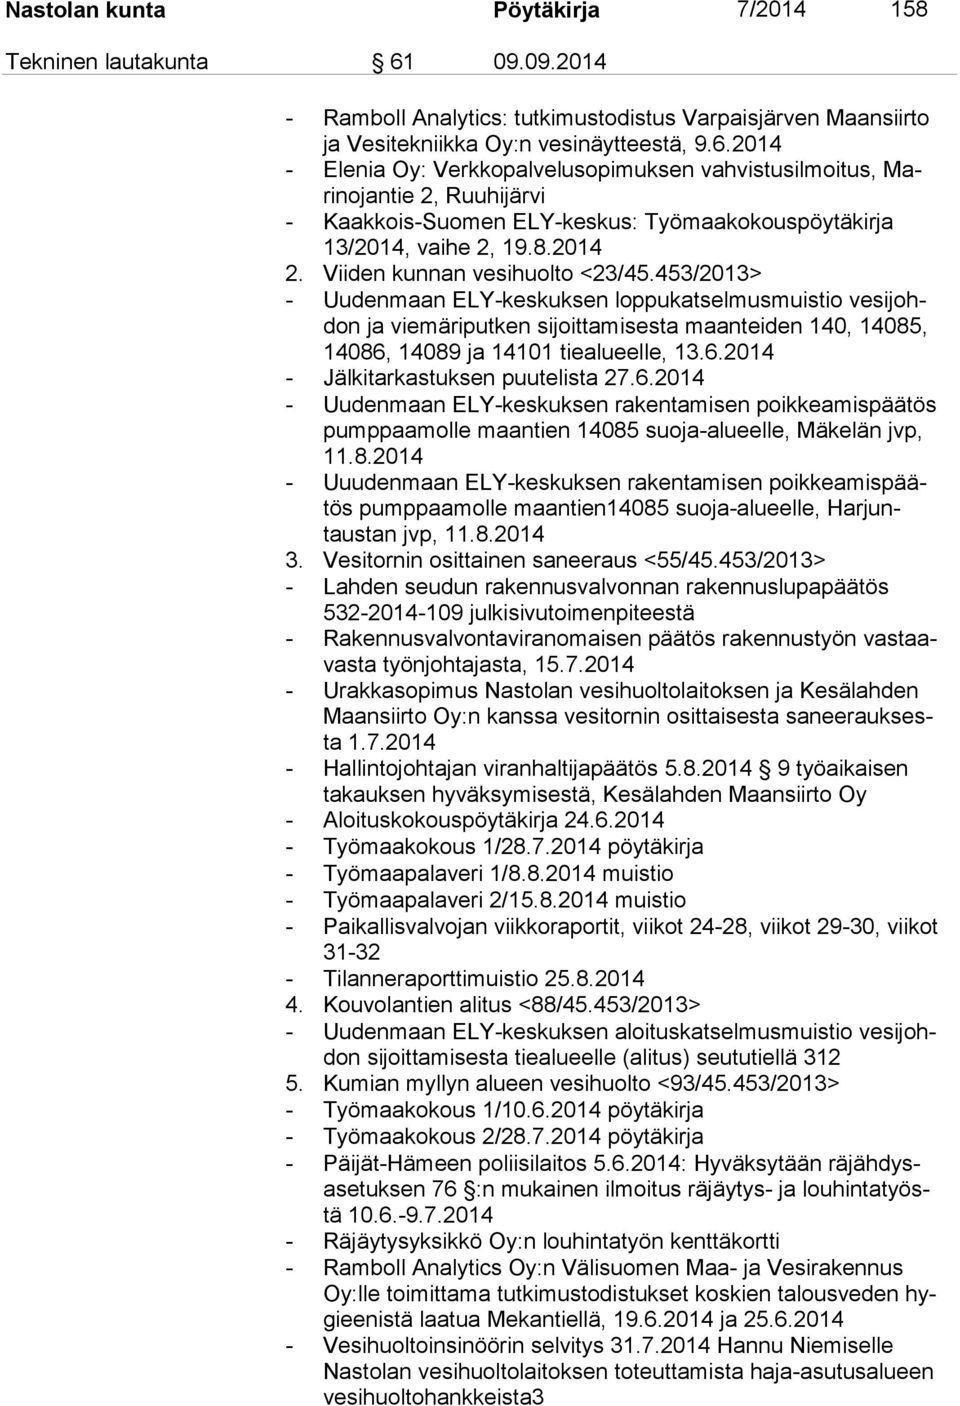 2014 - Elenia Oy: Verkkopalvelusopimuksen vahvistusilmoitus, Marinojan tie 2, Ruuhijärvi - Kaakkois-Suomen ELY-keskus: Työmaakokouspöytäkirja 13/2014, vaihe 2, 19.8.2014 2. Viiden kunnan <23/45.